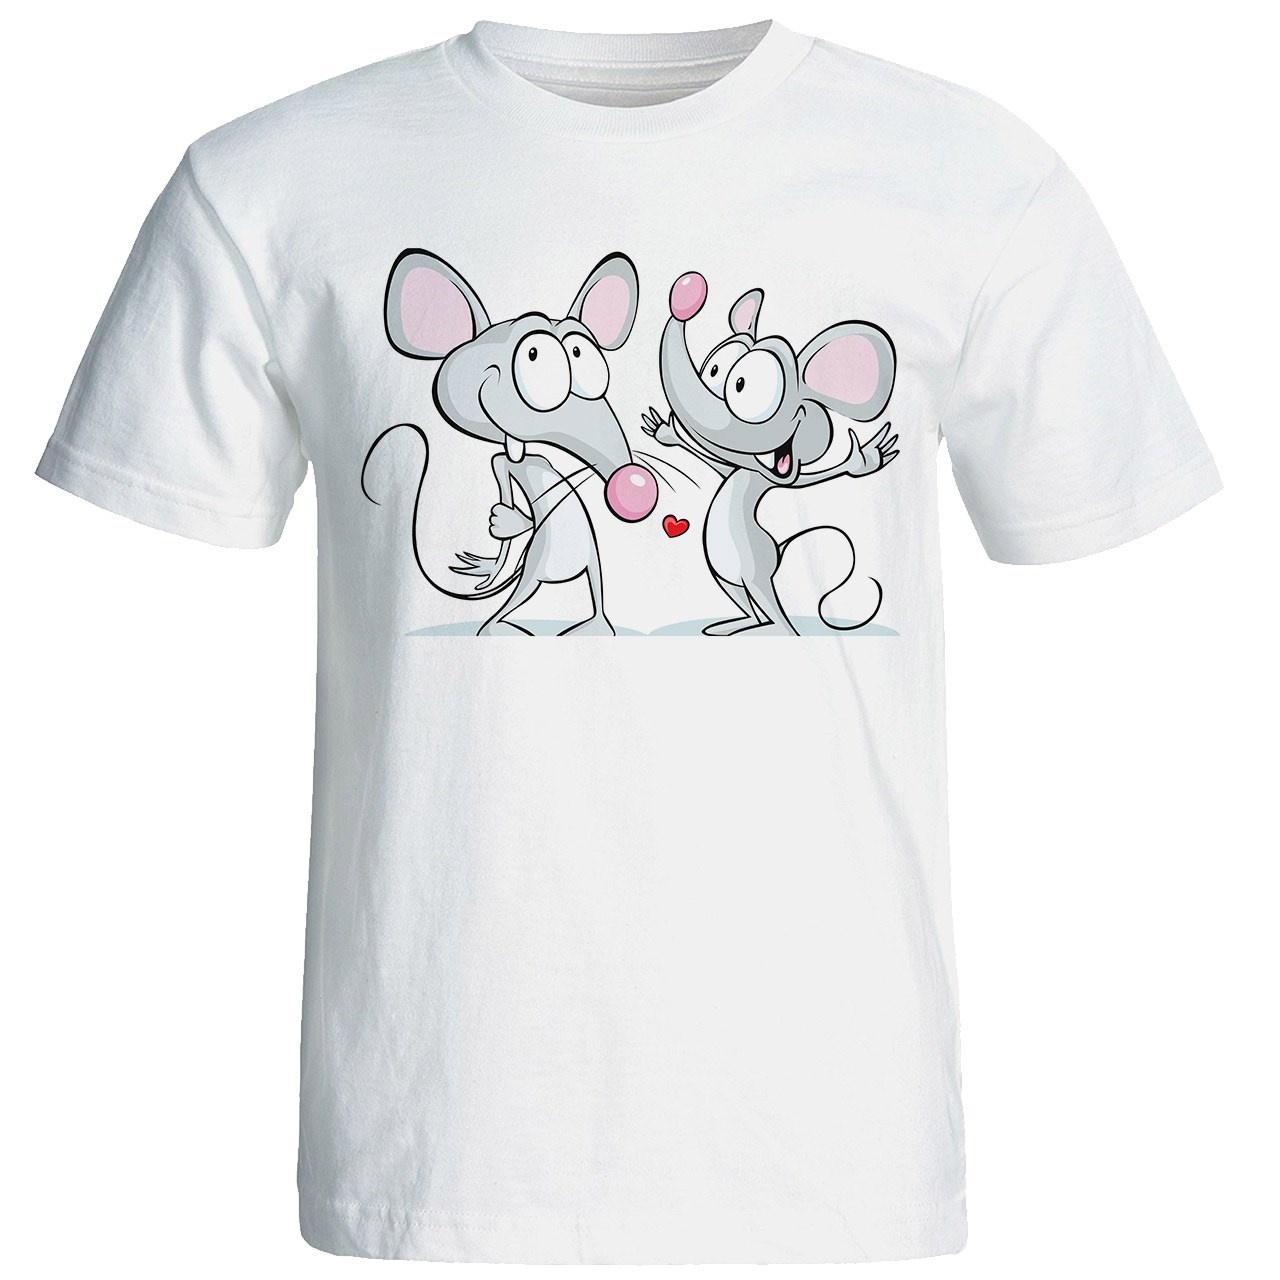 تی شرت آستین کوتاه شین دیزاین طرح دو موش عاشق کد 4358